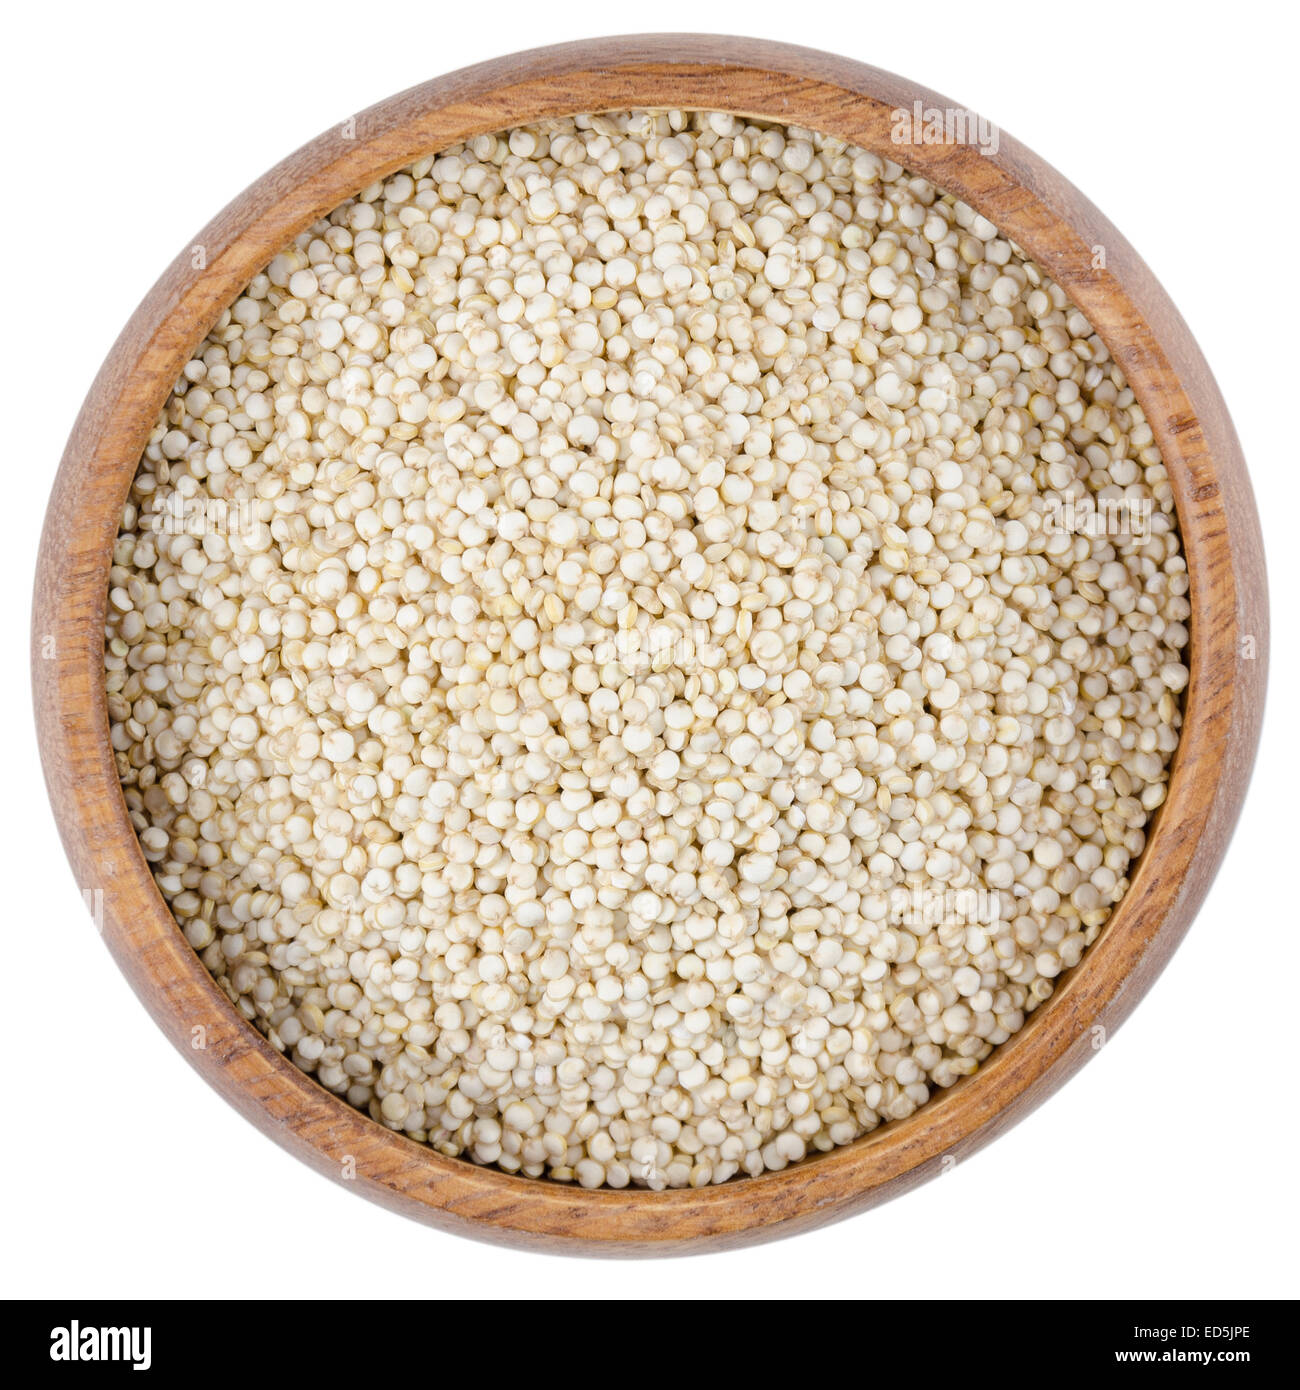 La quinoa semi in una ciotola. Materie di quinoa semi in una ciotola di legno dal di sopra, isolato su sfondo bianco. Foto Stock